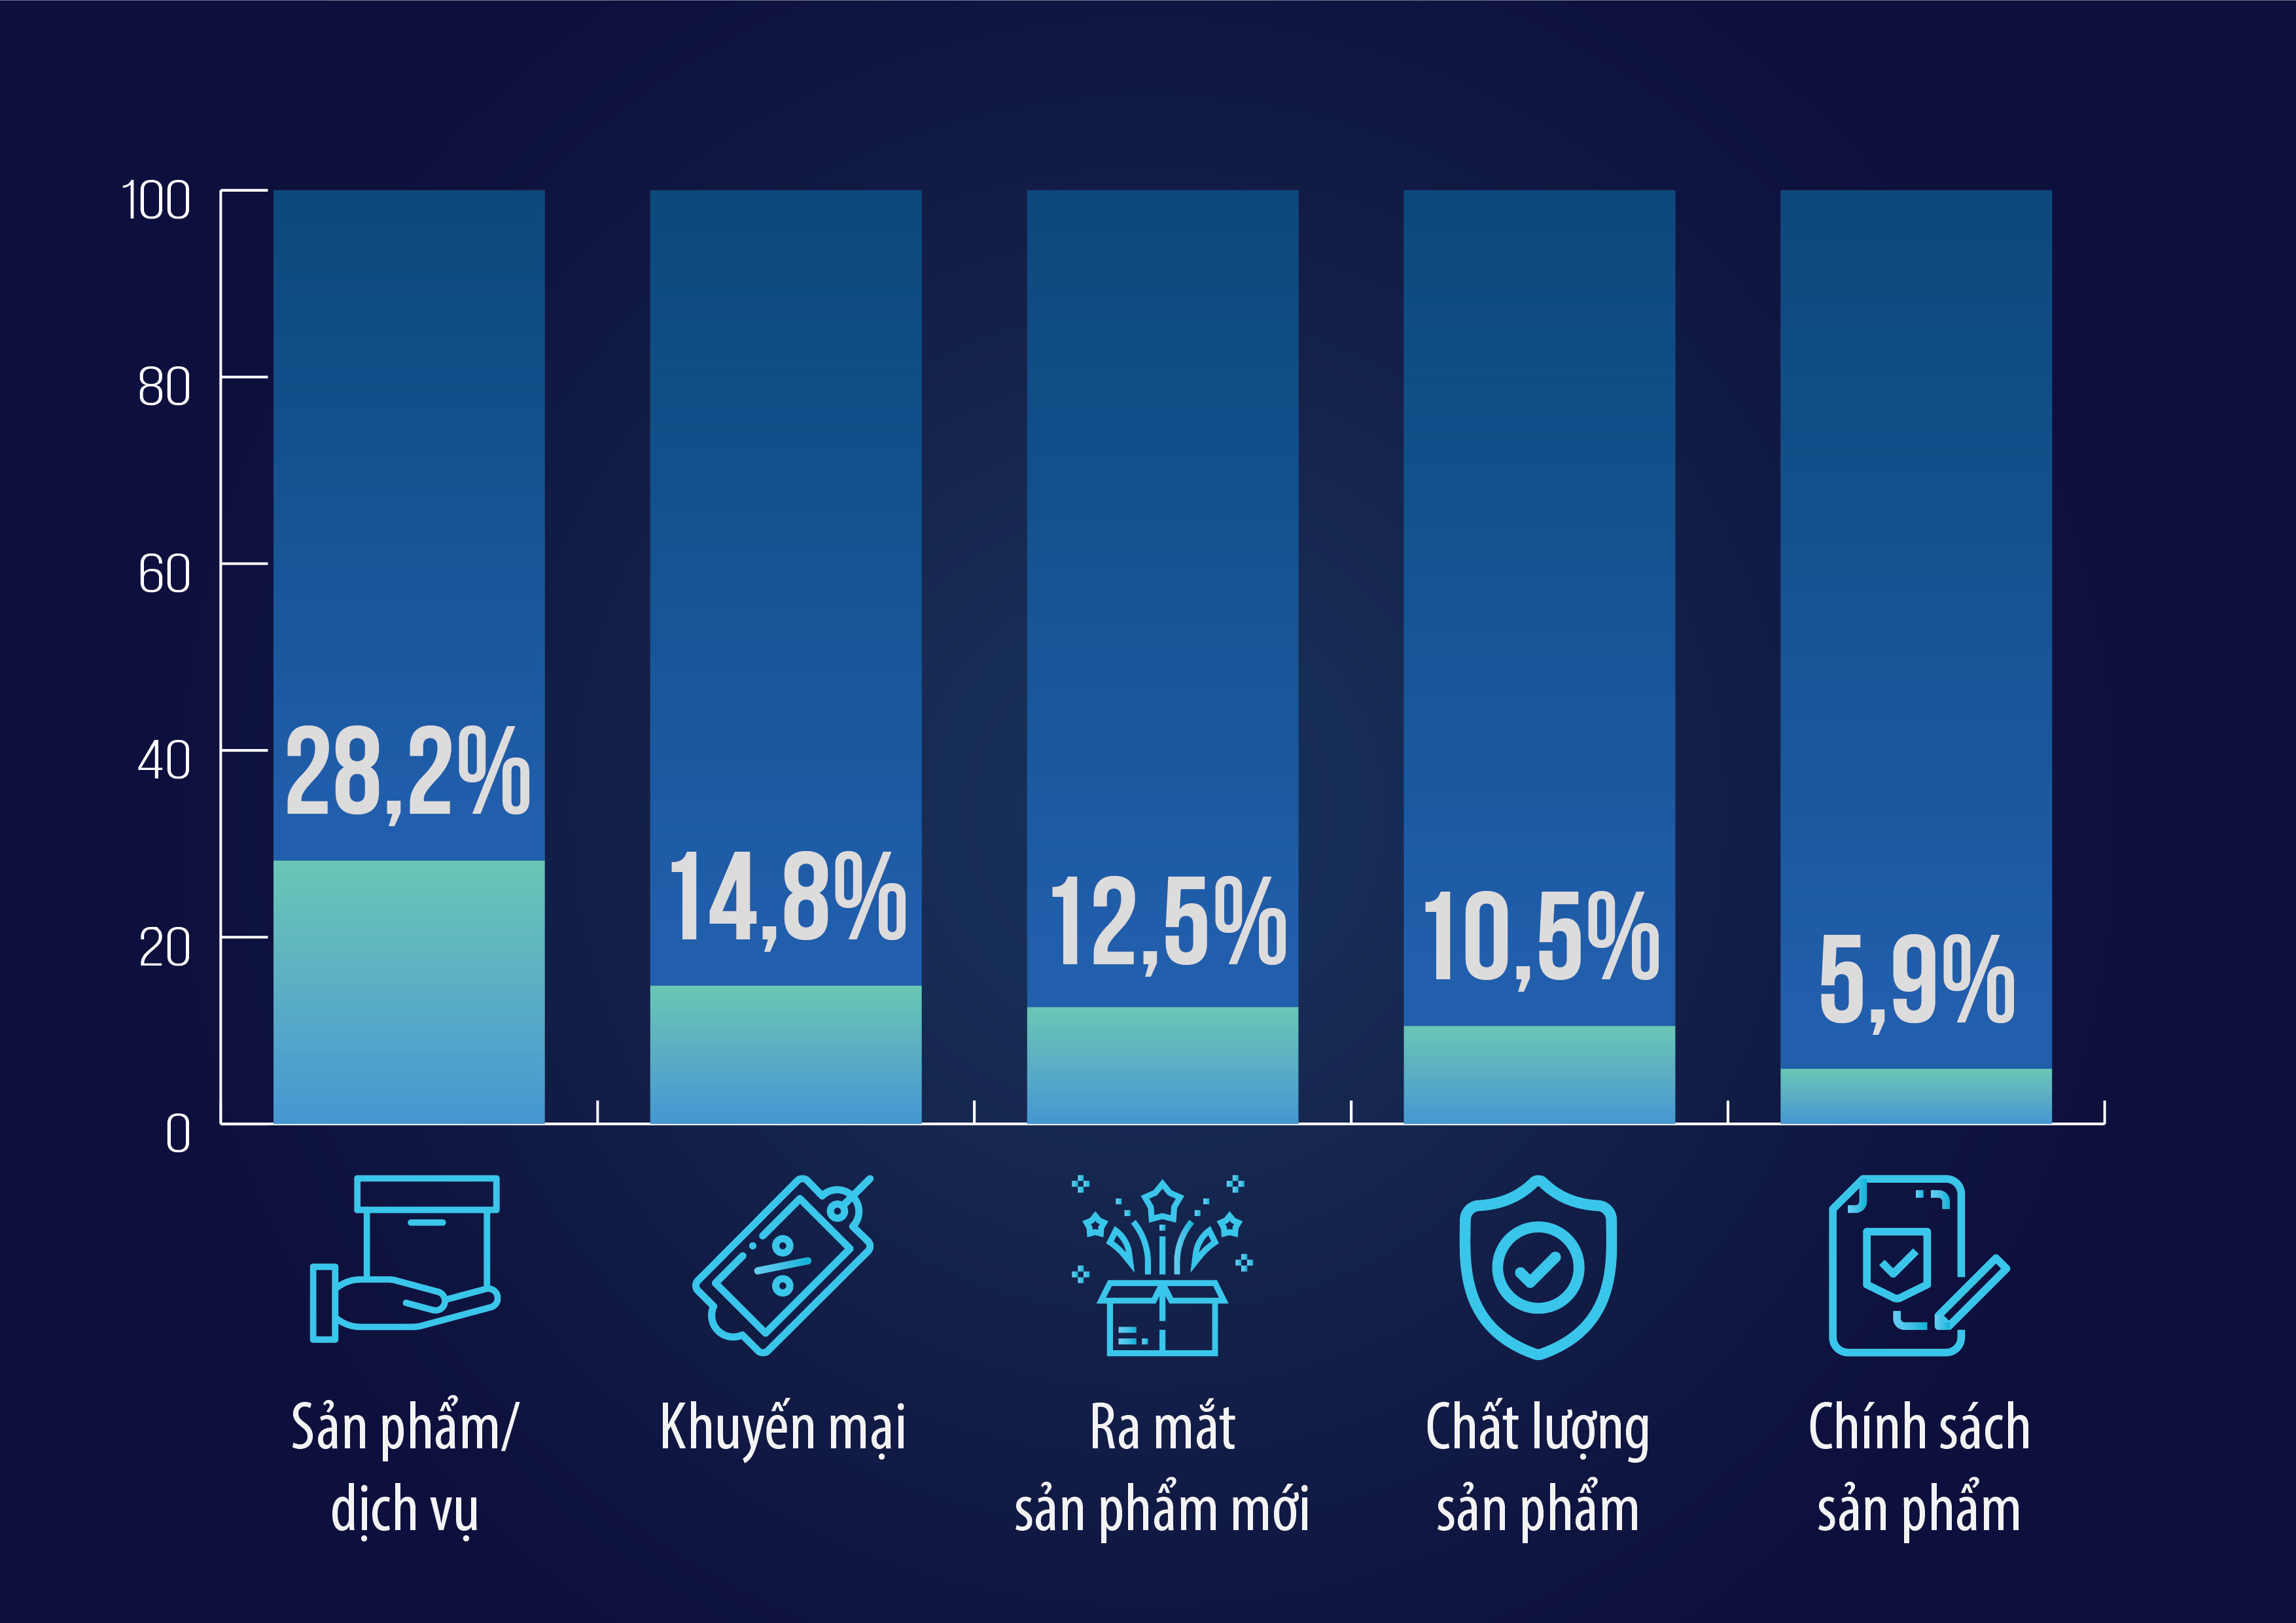 5 chủ đề có tỷ lệ thông tin lớn nhất ttrong nhóm Khách hàng/ sản phẩm của ngành CNTT-VT Việt Nam